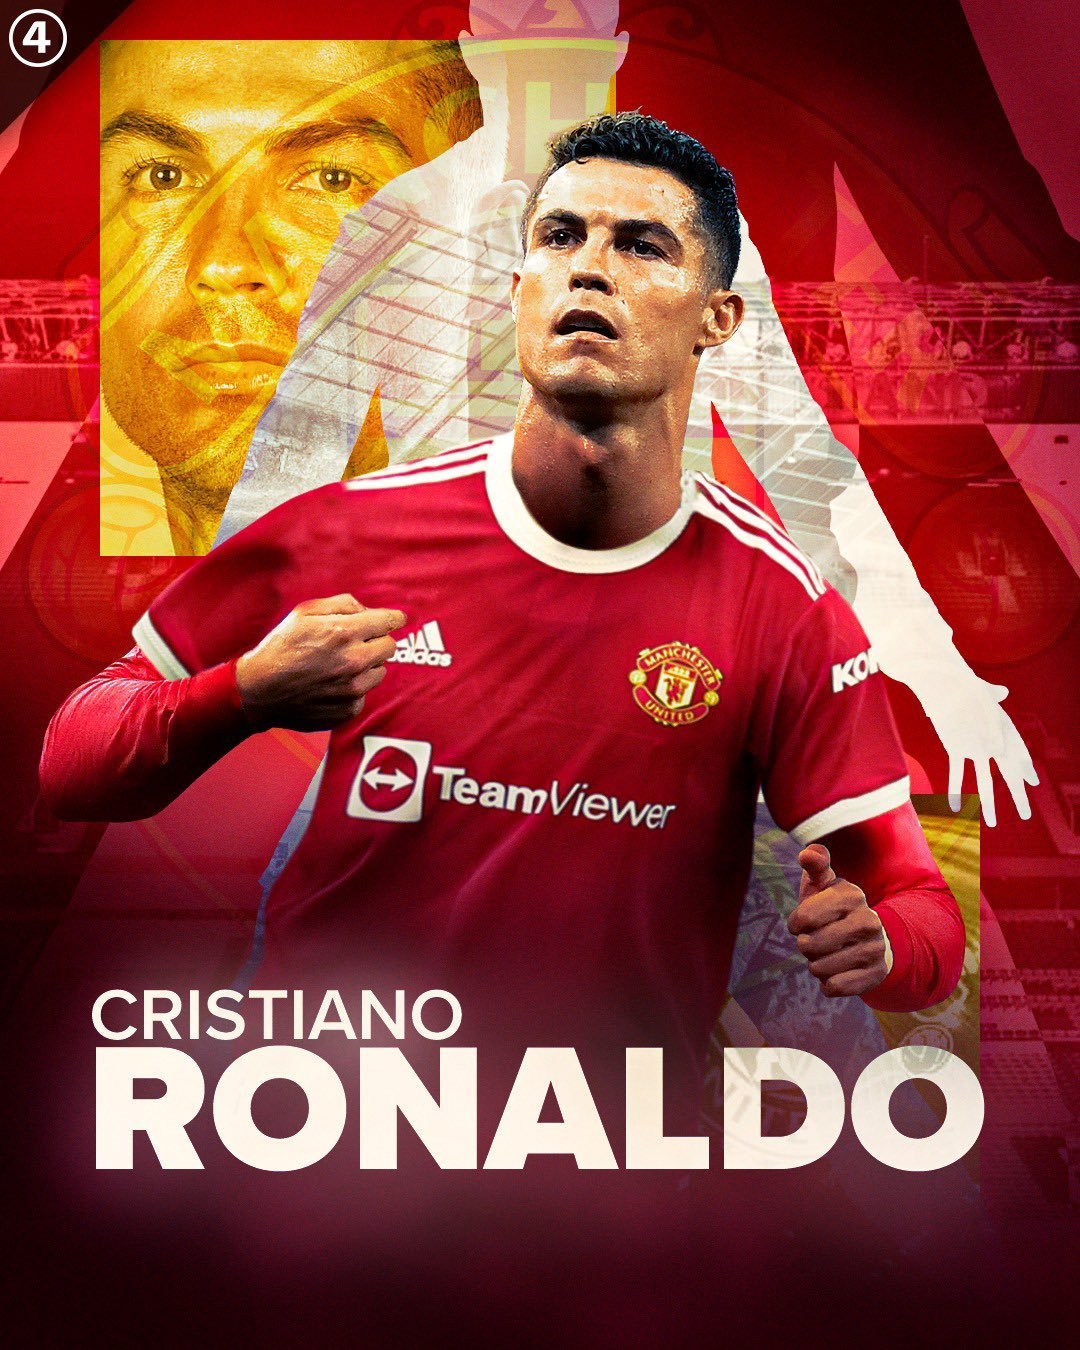 All about Cristiano Ronaldo dos Santos Aveiro